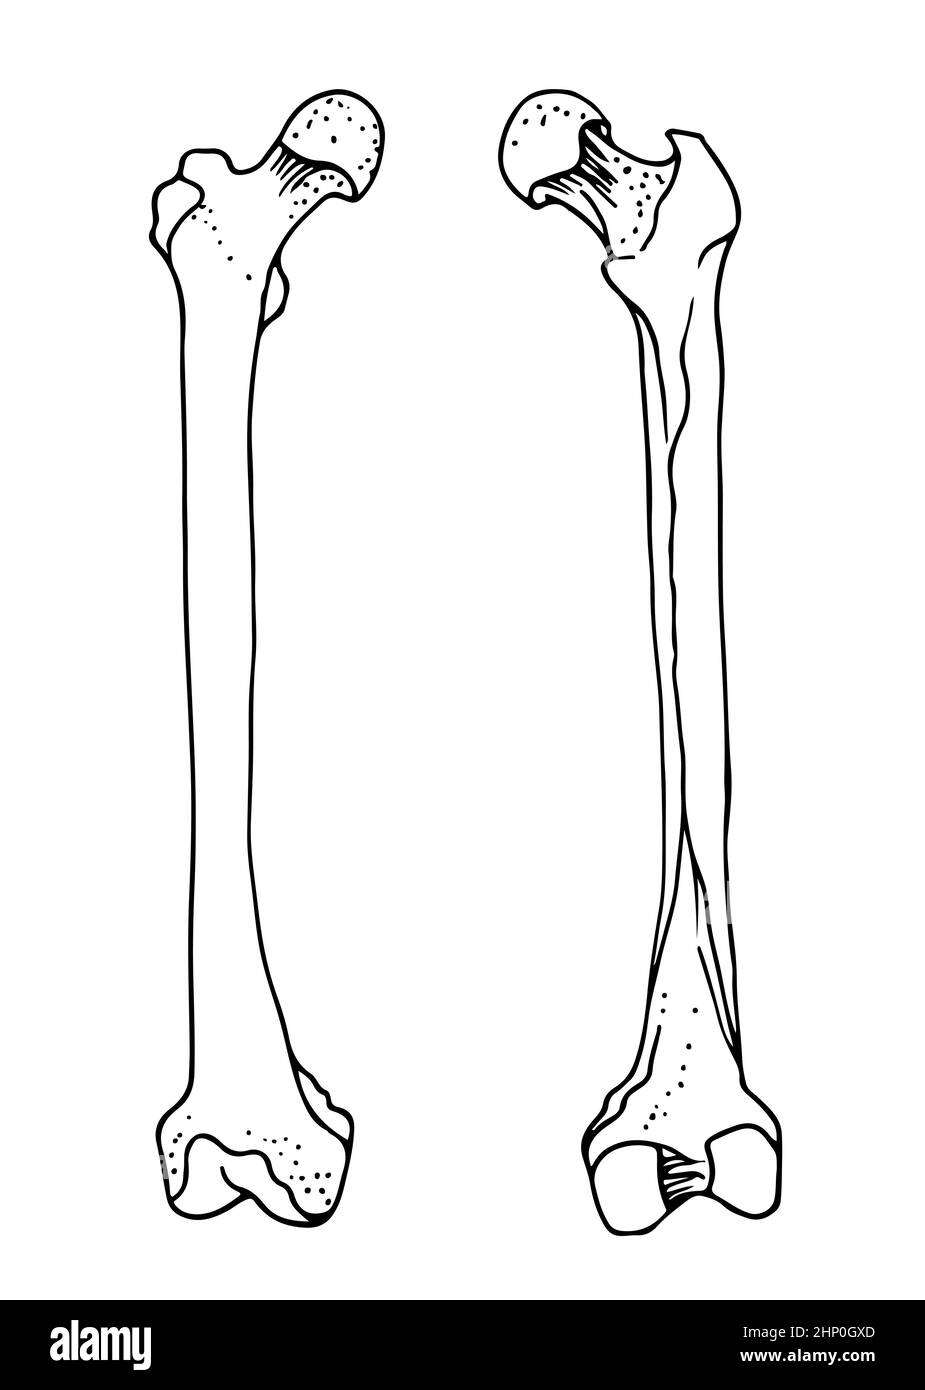 Ossa femorali umane, illustrazione vettoriale disegnata a mano isolata su sfondo bianco, disegno anatomico della medicina ortopedica Illustrazione Vettoriale